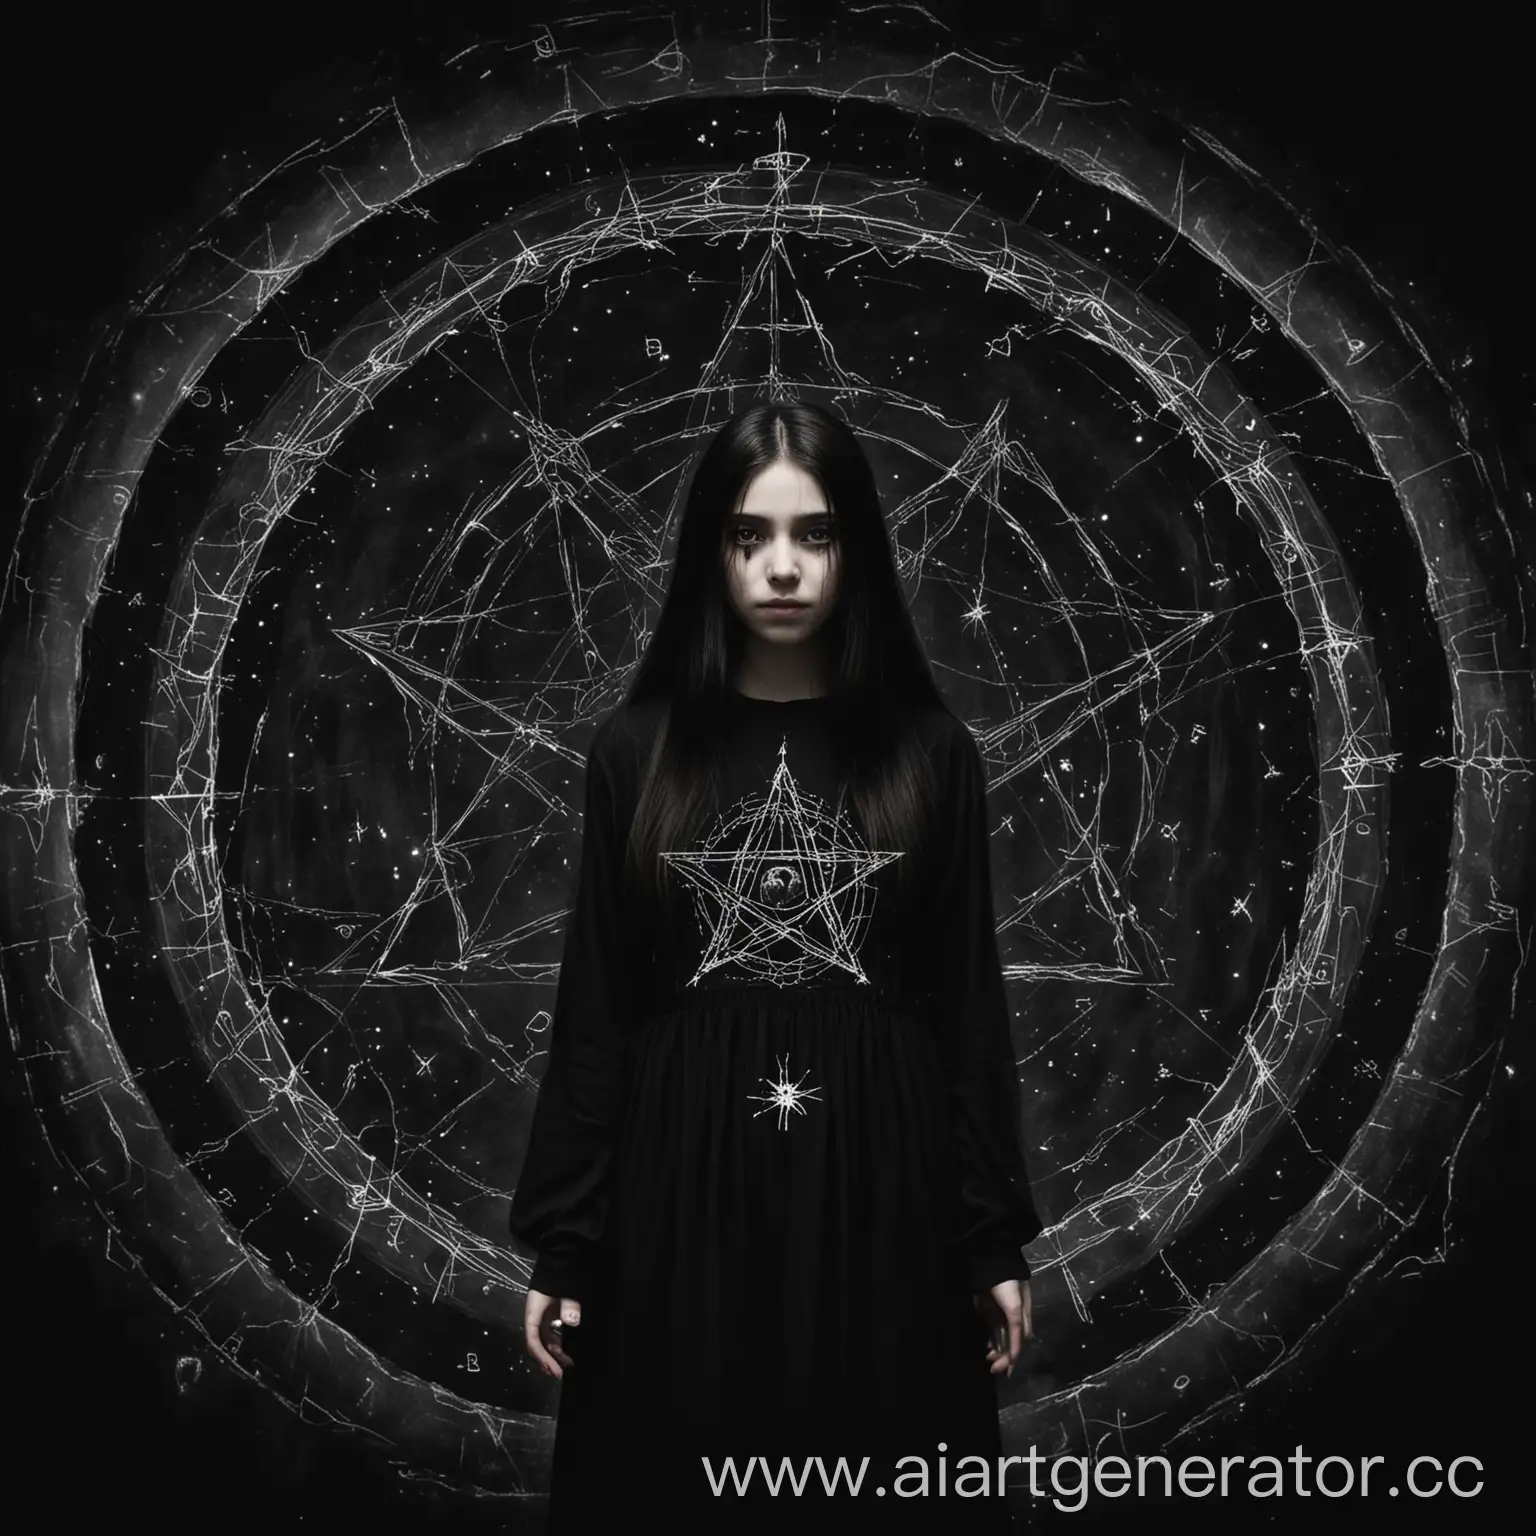 Девушка в чёрной одежде длинной стоит в темноте, на её руках портал из пентаграммы, она среди мёртвых душ, глаза её, чёрные